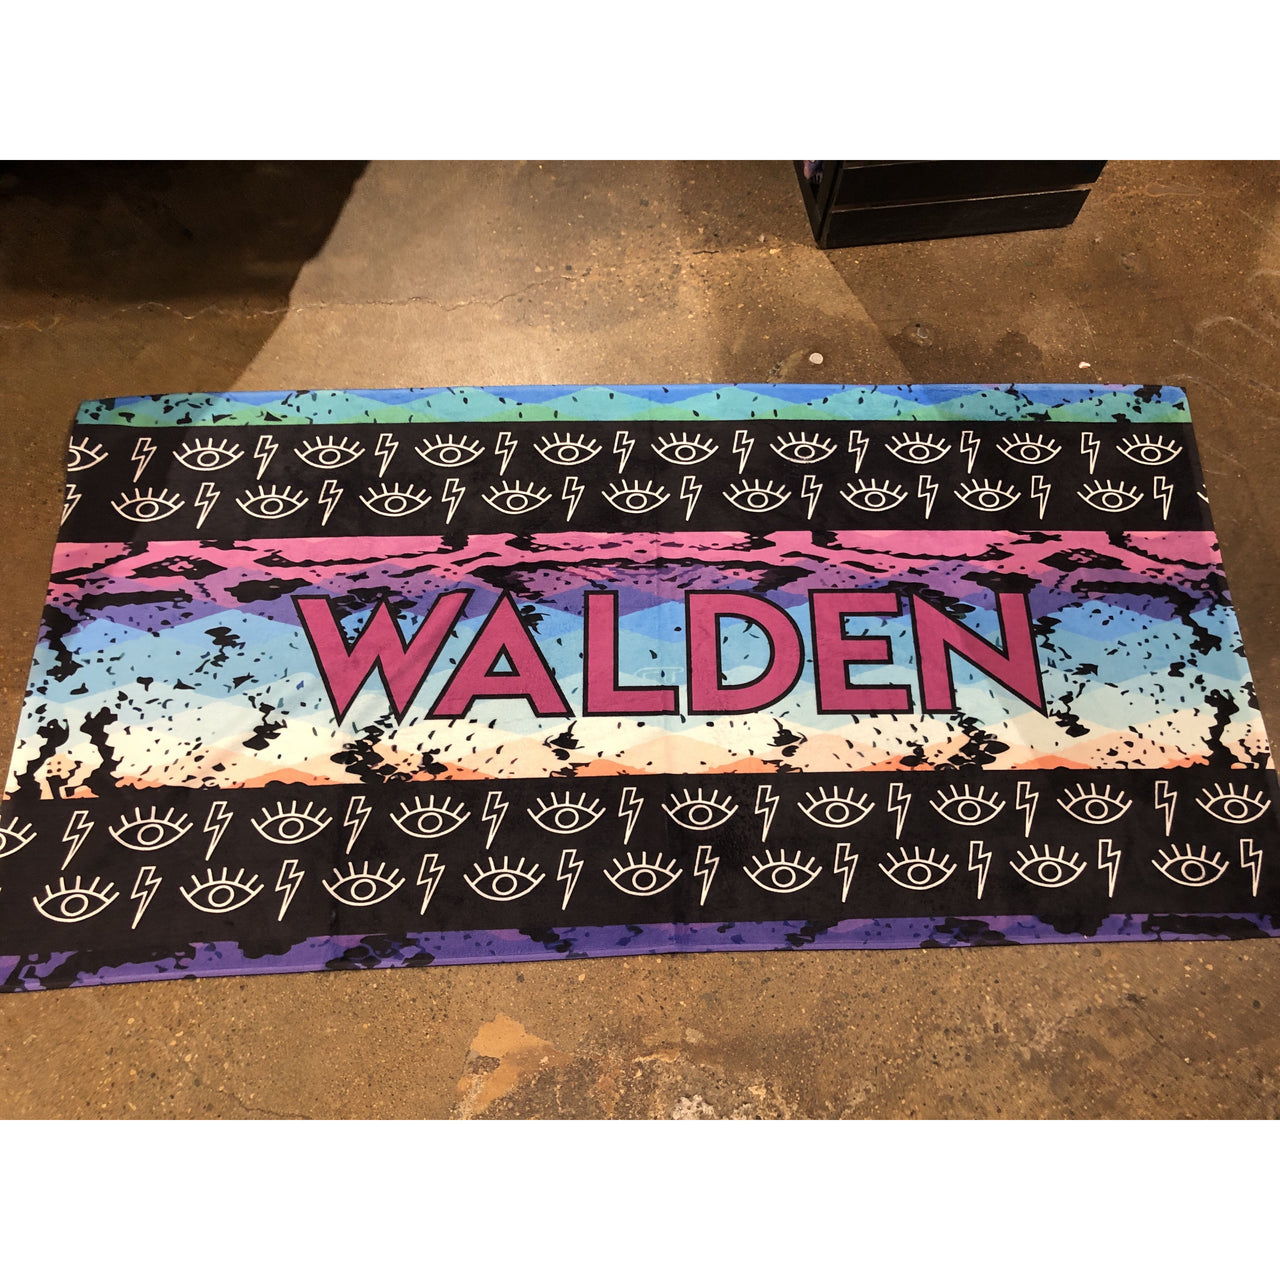 Walden "Snake" Towel